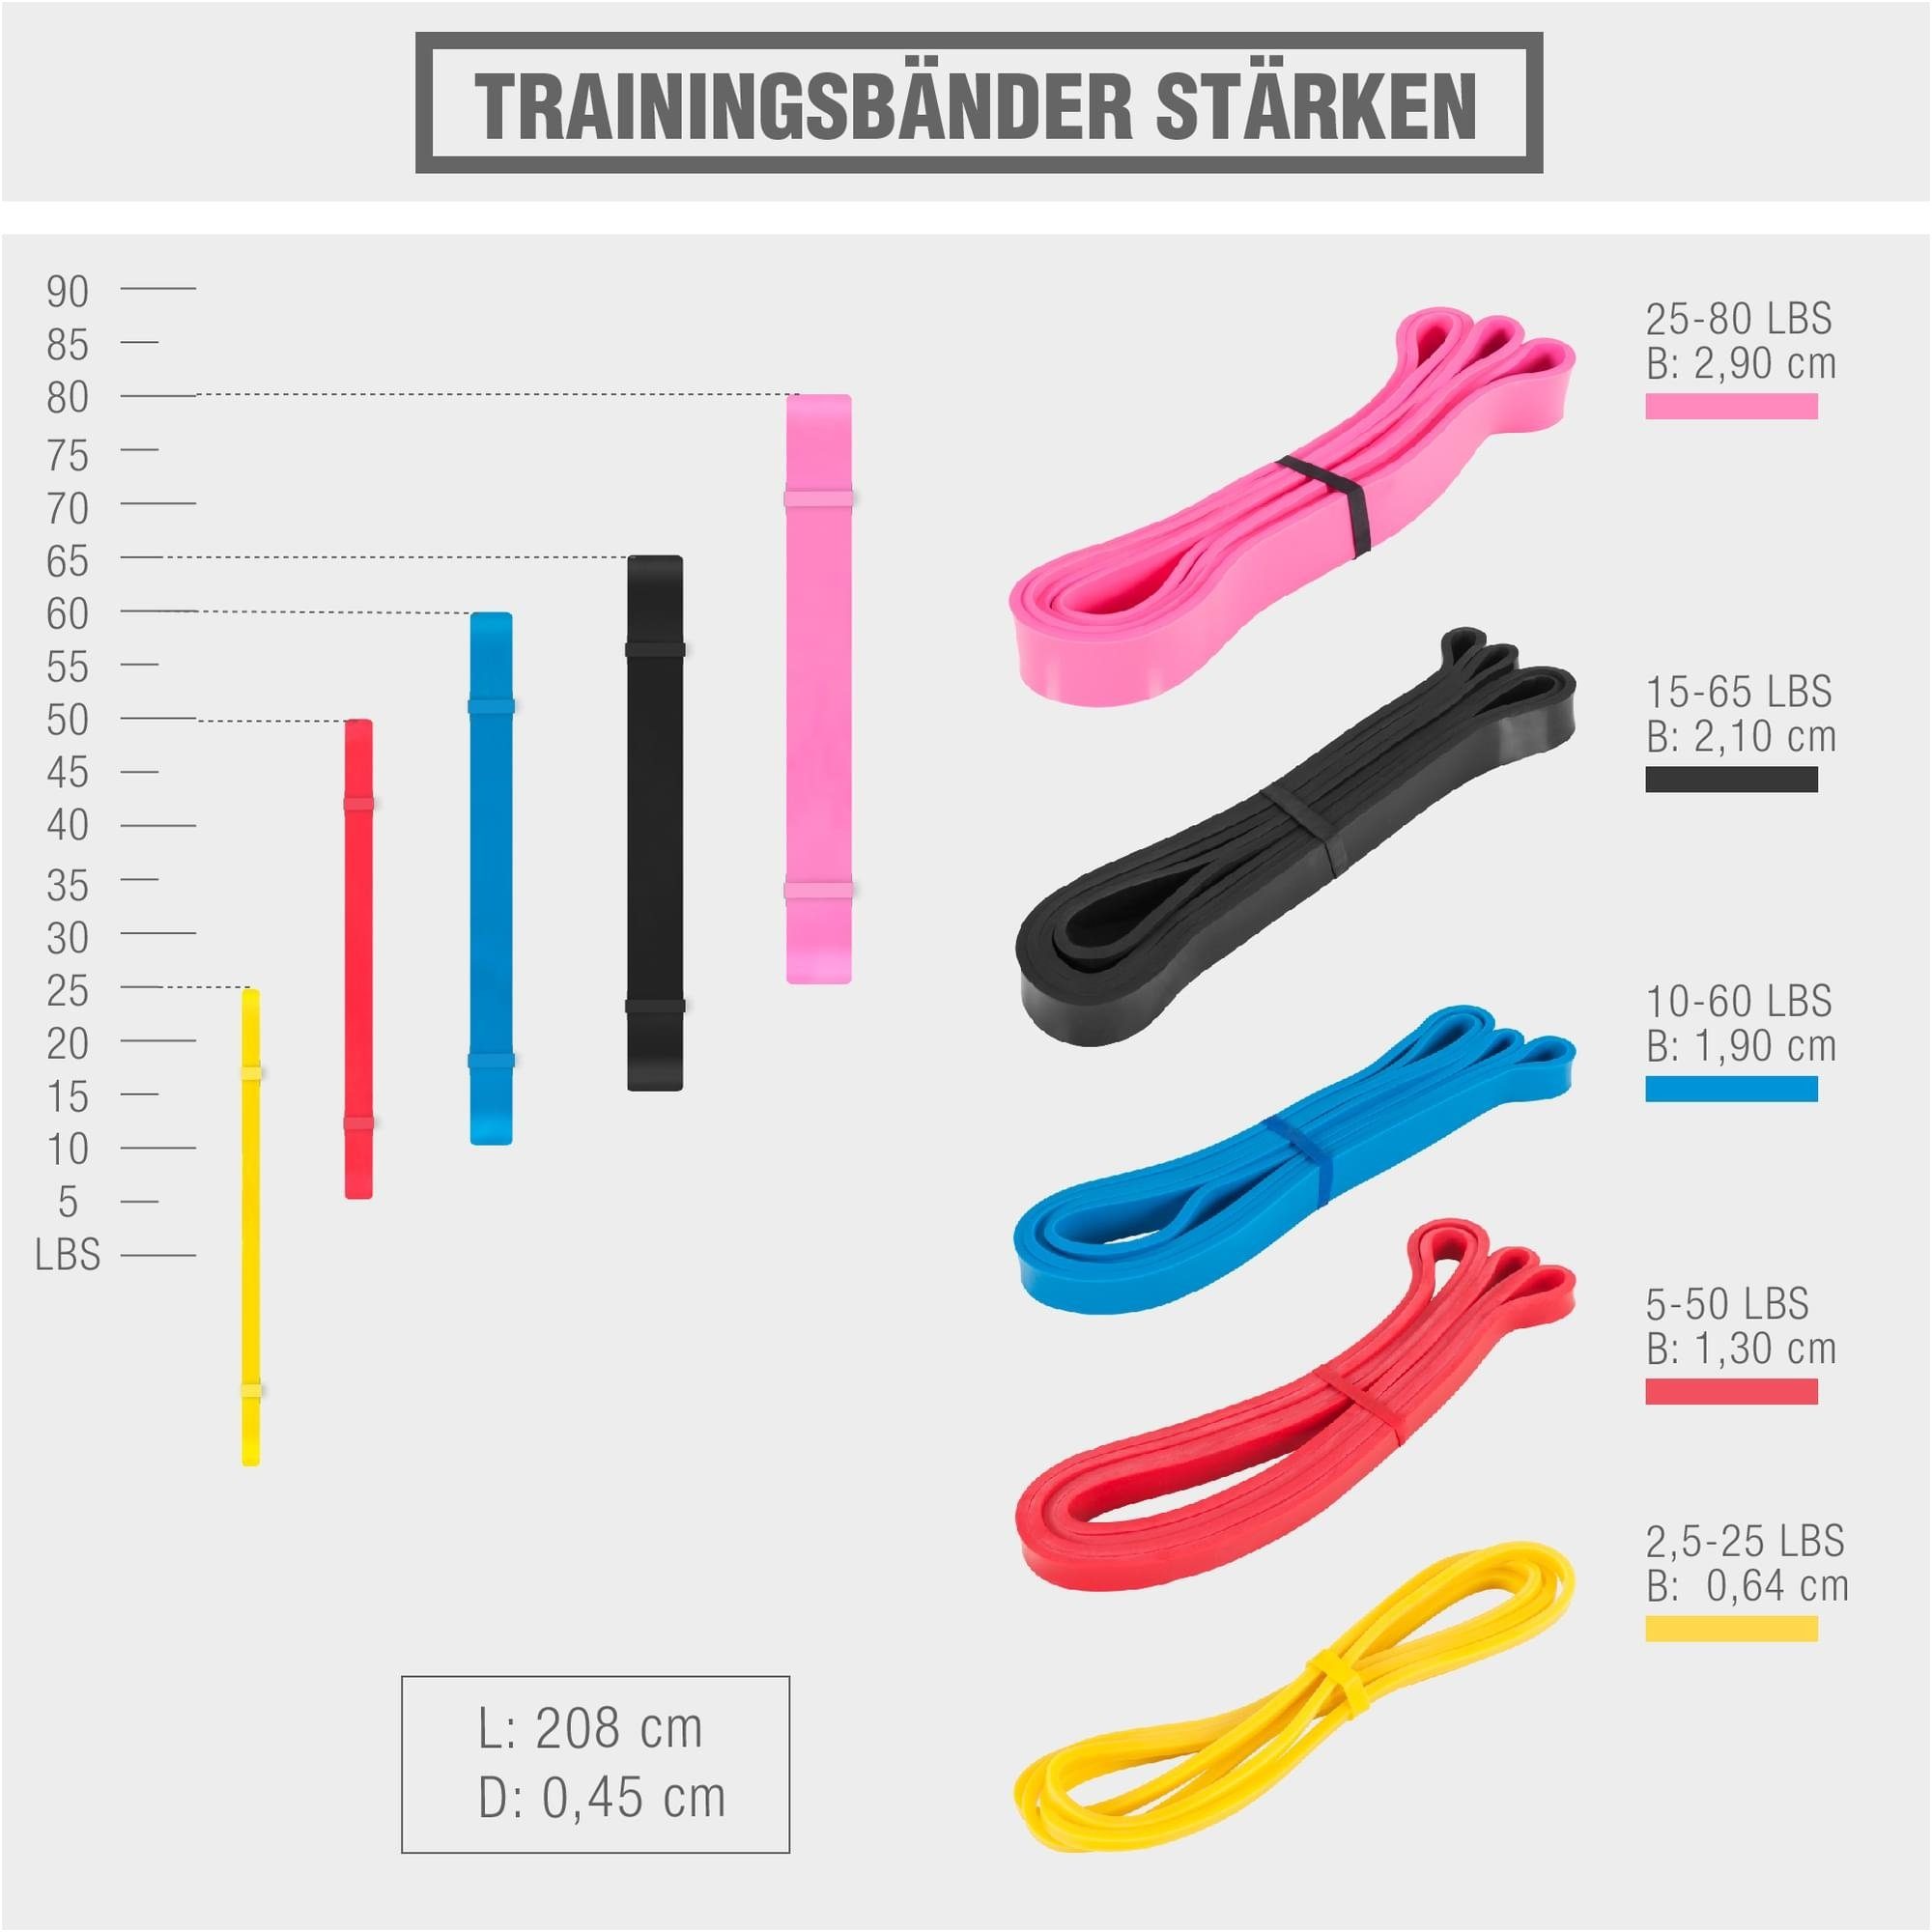 GORILLA SPORTS Trainingsband mm 19 verschiedenen 10 Fitnessbänder, Stärken, elastische, Bands Resistance